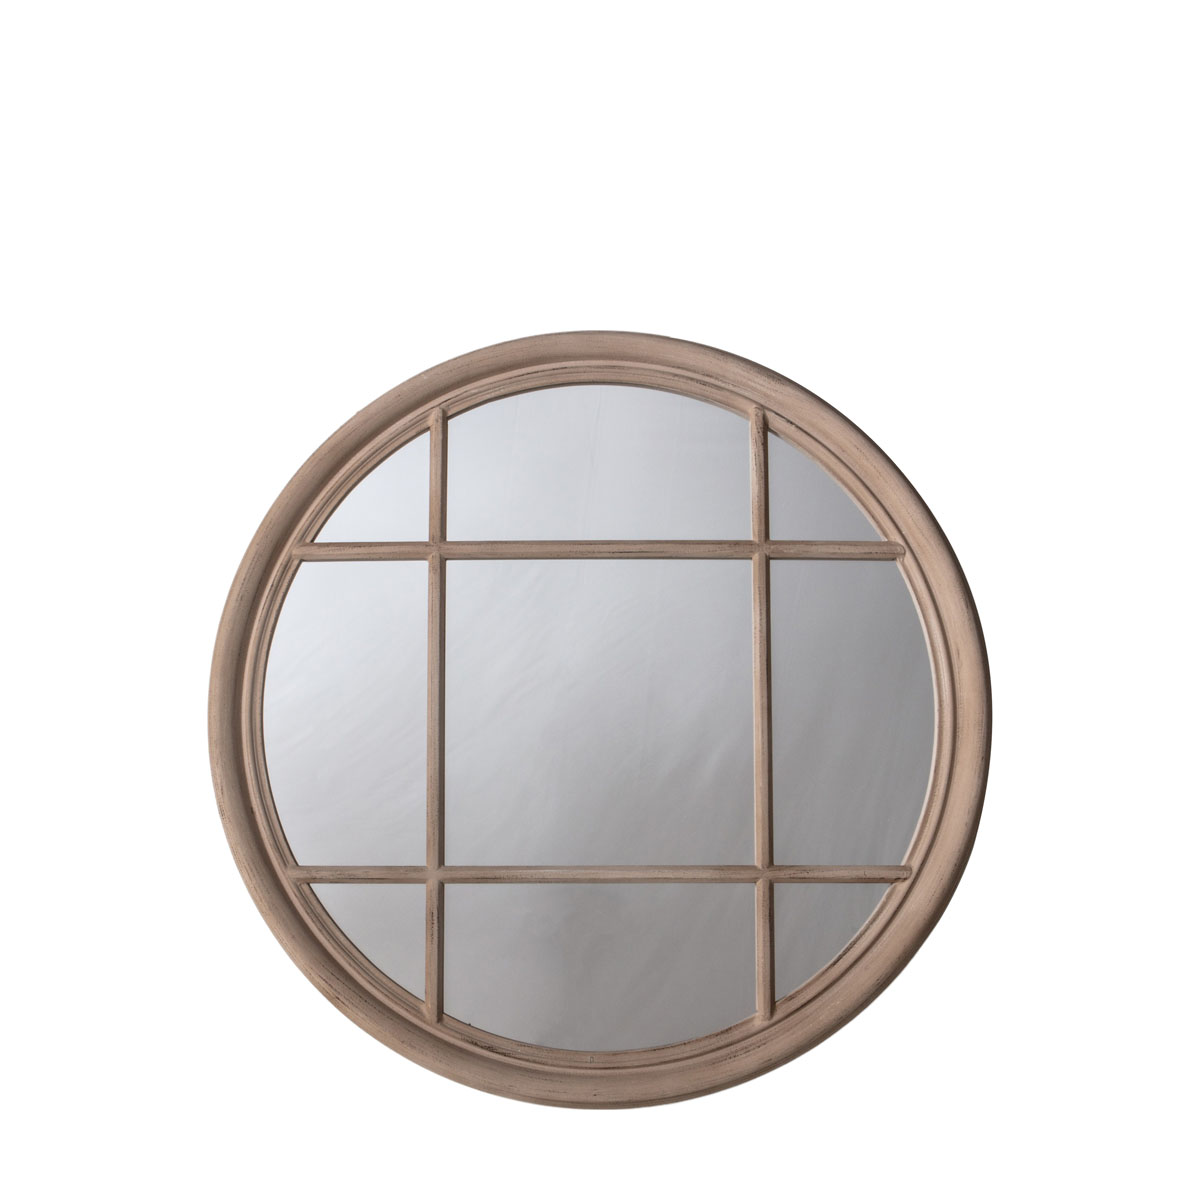 Eccleston Round Mirror Clay 1000x1000mm